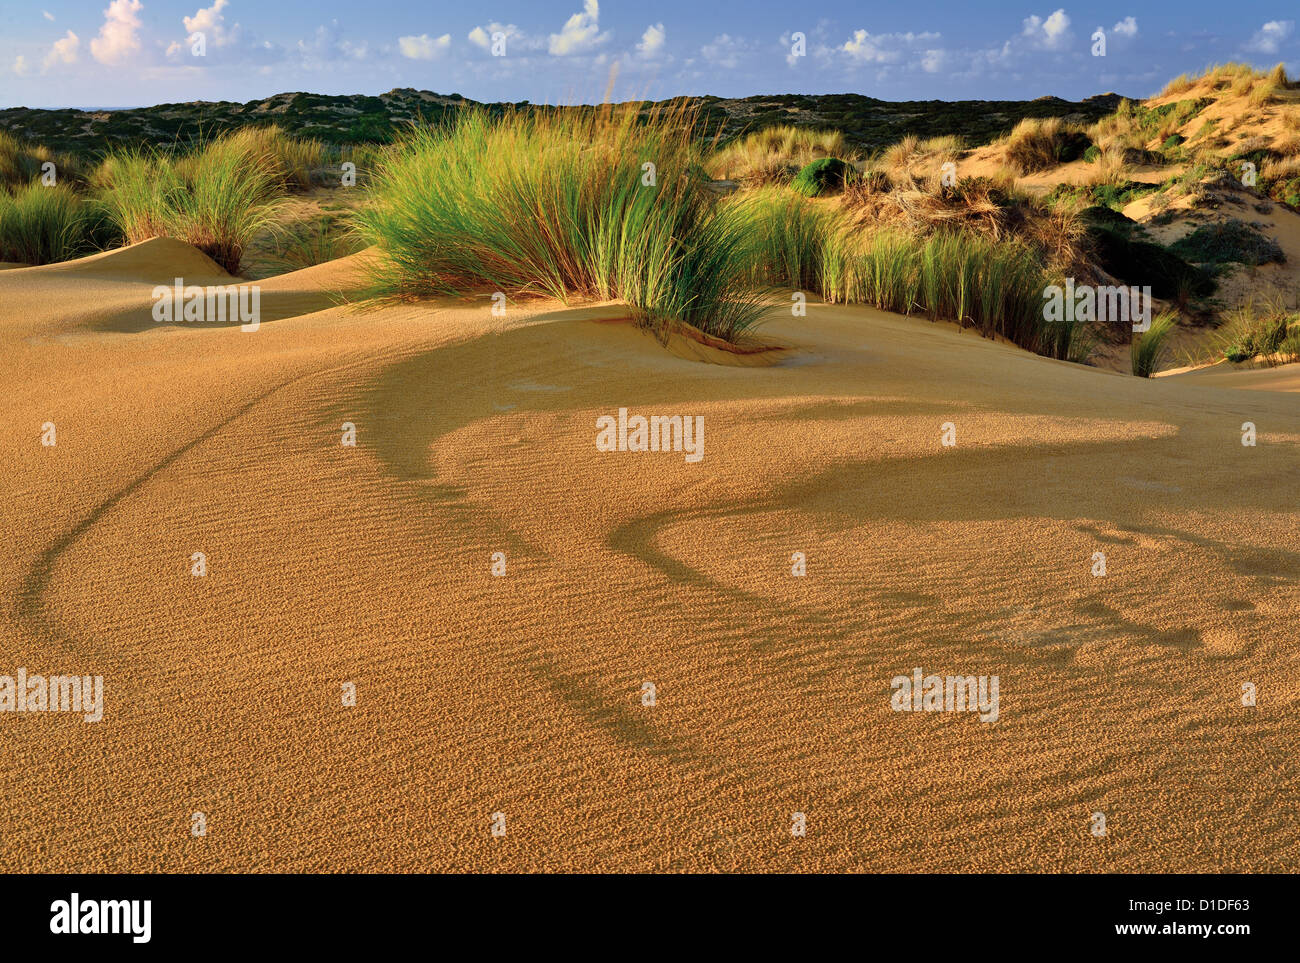 Le Portugal, l'Algarve : formations et la végétation des dunes de sable à la plage Praia da Bordeira Banque D'Images